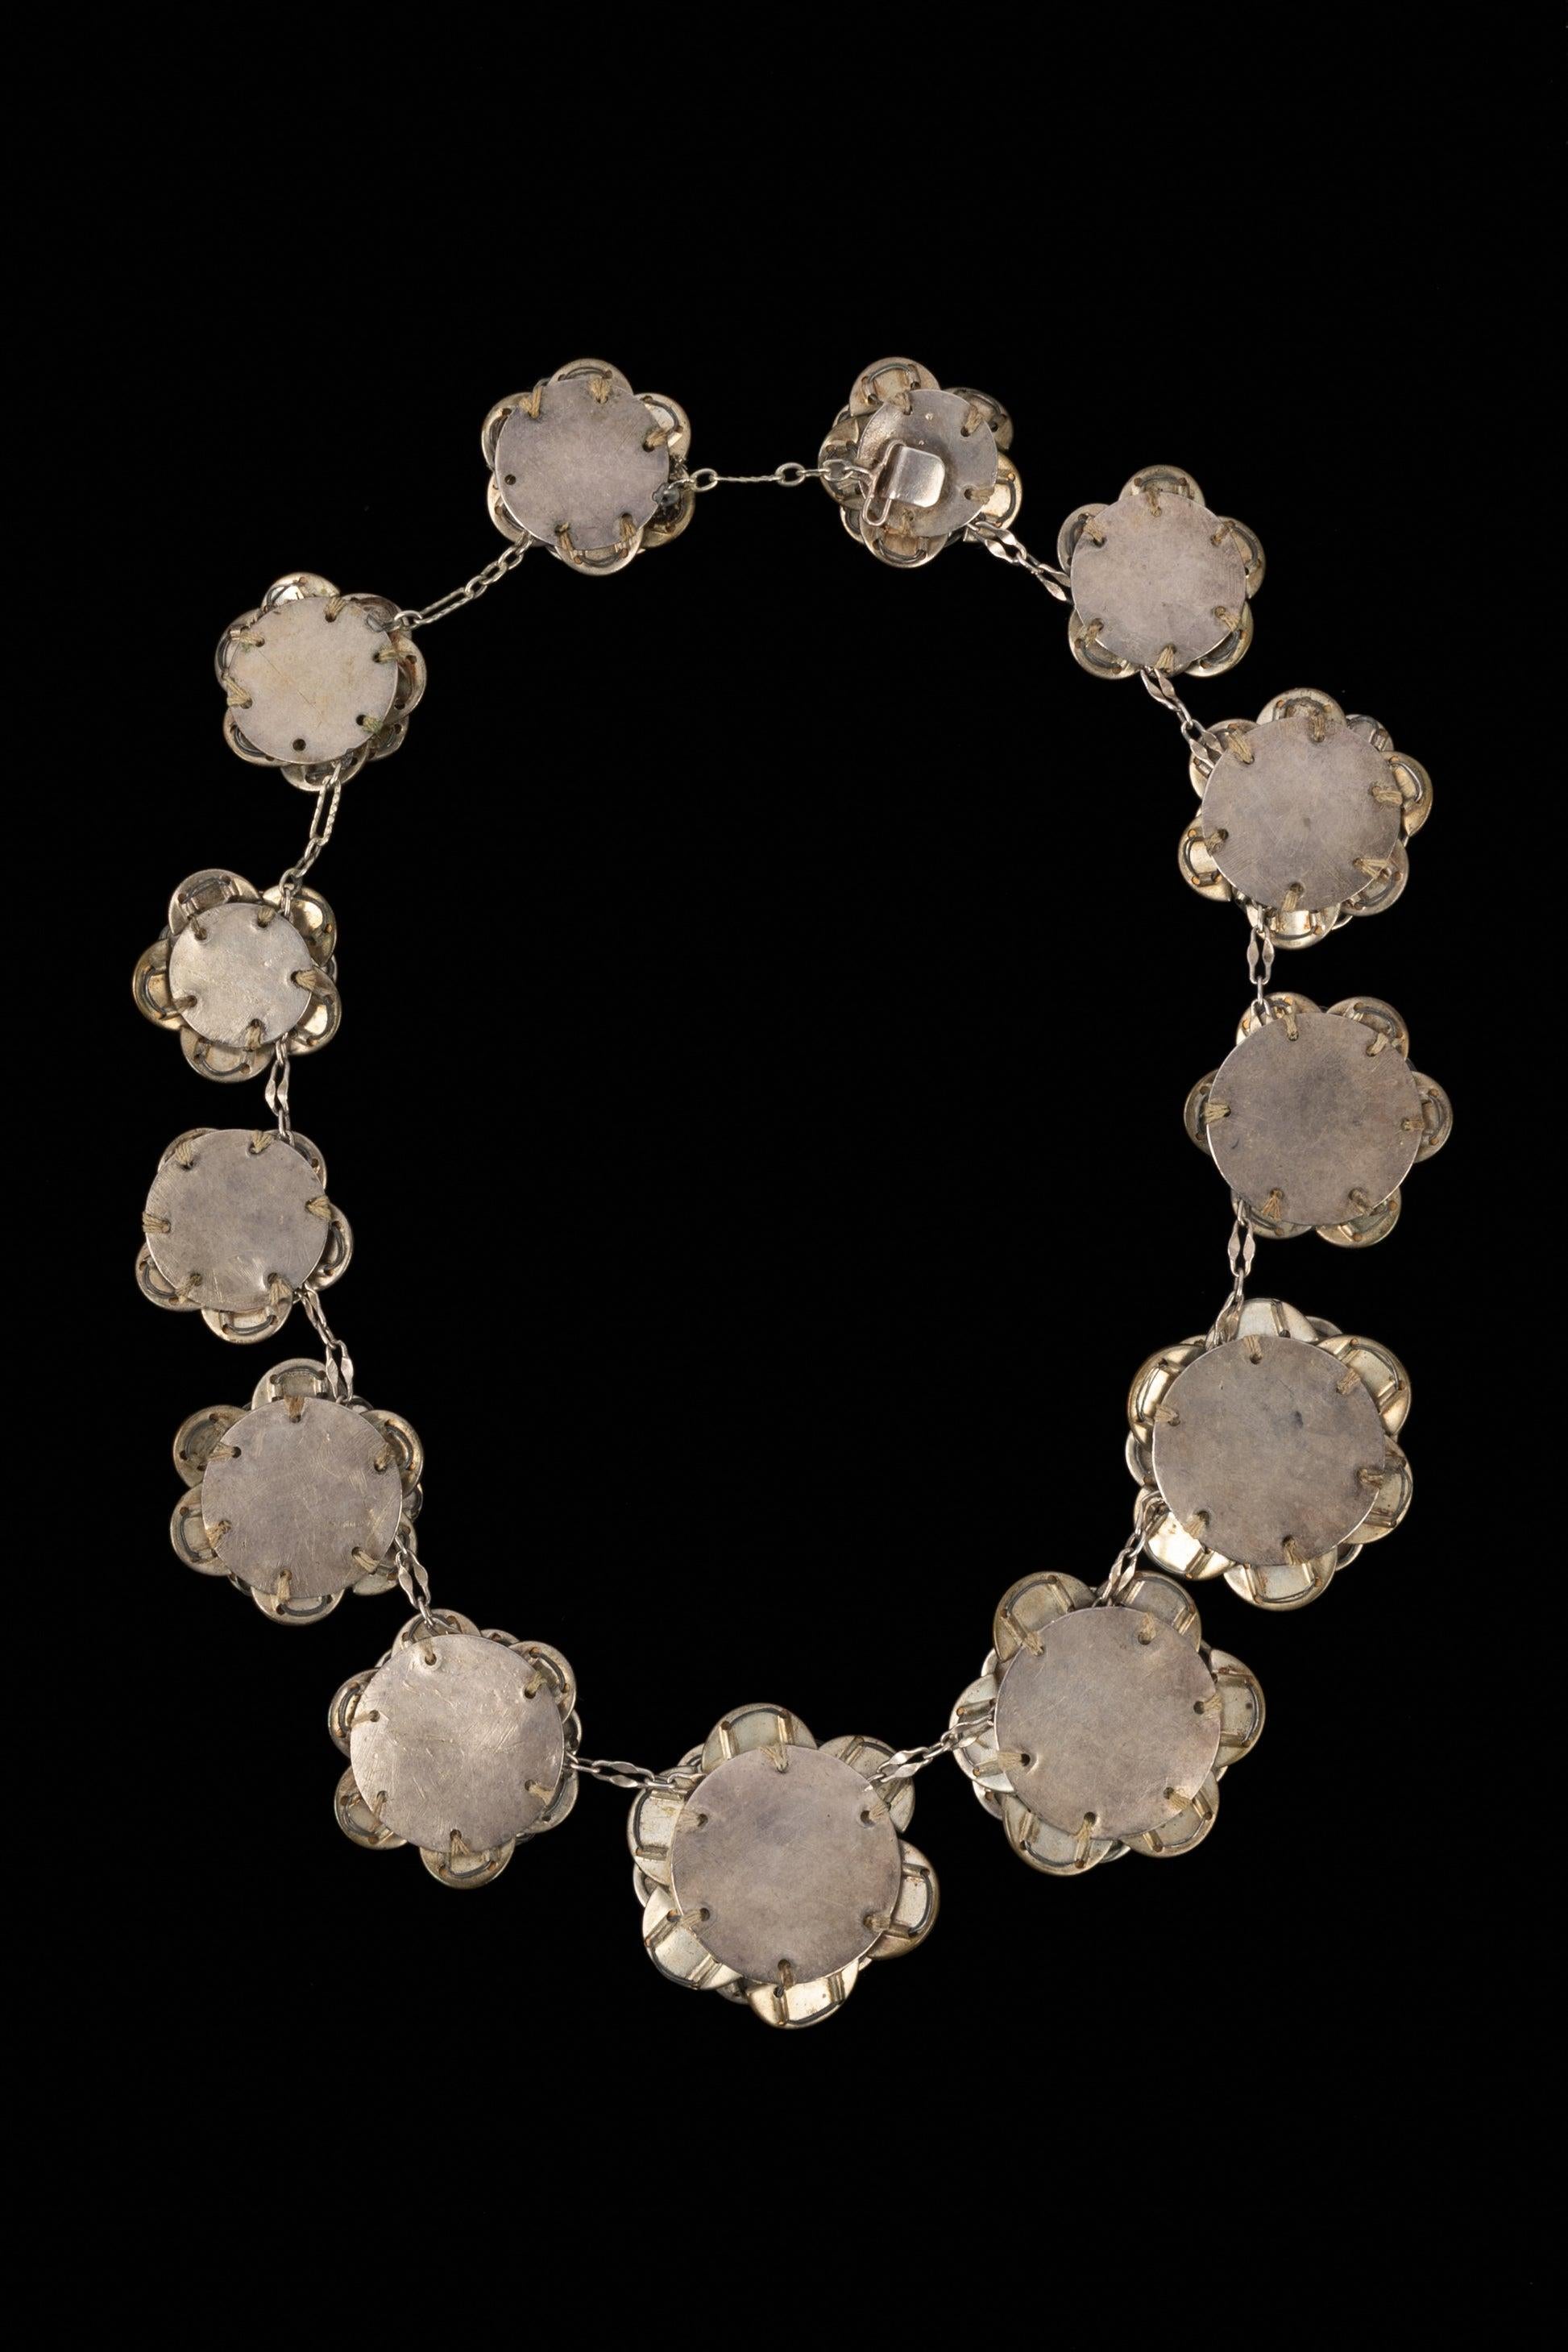 Chanel - Collier composé de demi-cercles de strass assemblés en forme de rose sur des cercles de métal argenté, l'ensemble suivant une progression 